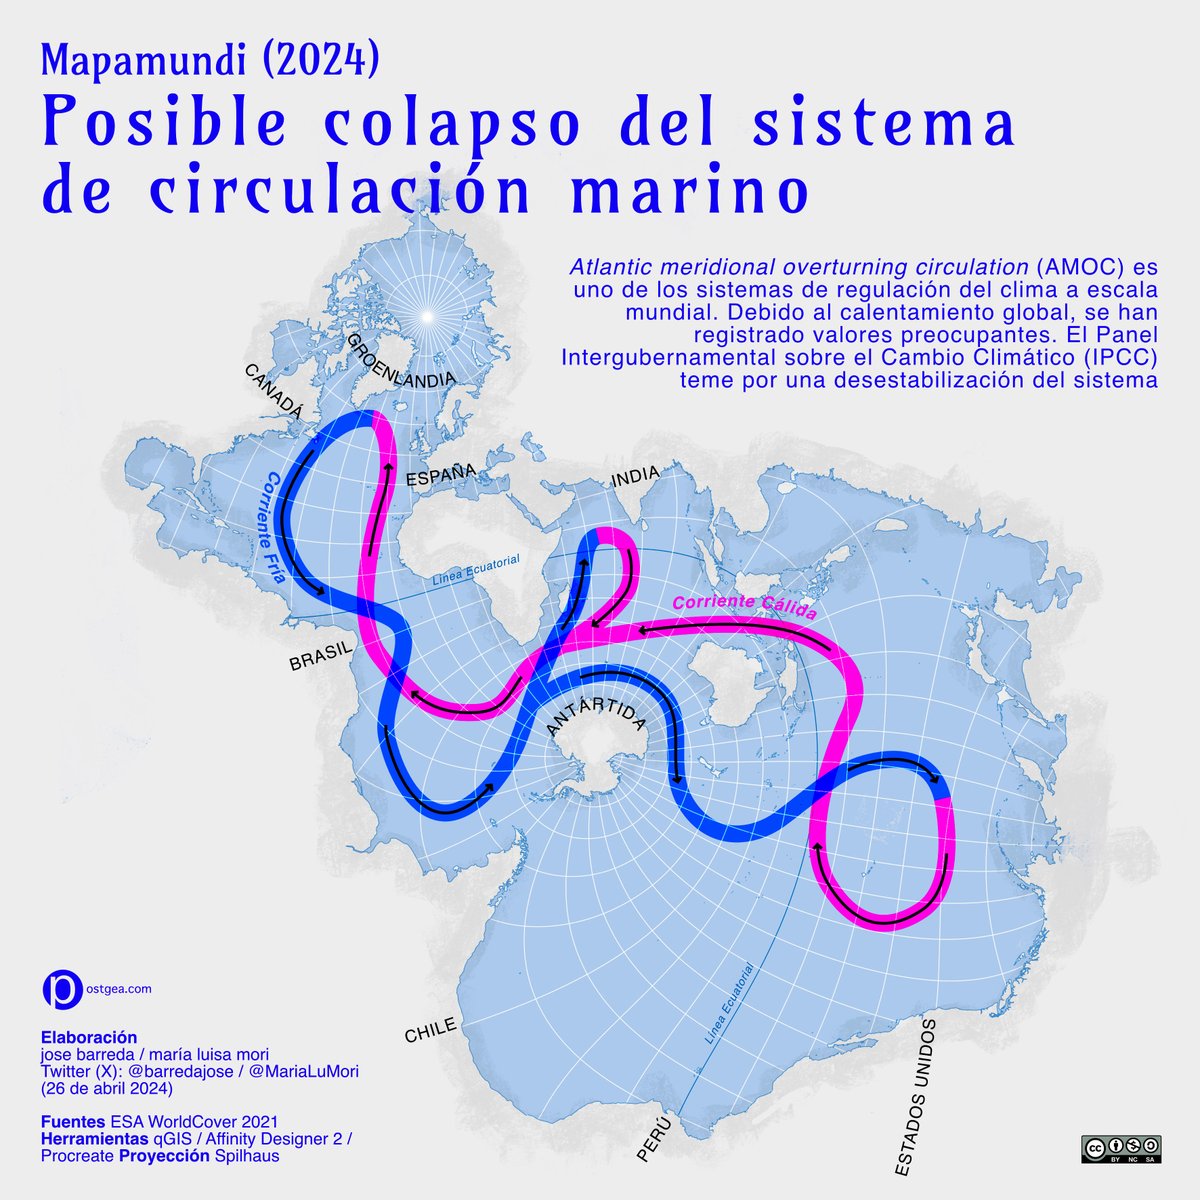 Para elaborar este mapa sobre el Sistema Atlántico de Circulación usamos la proyección Spilhaus que nos permite ver los mares como un gran sistema interconectado. Su posible colapso en el siguiente artículo

nature.com/articles/s4146…
#Mapa #Map #CambioClimatico #GlobalWarning #AMOC